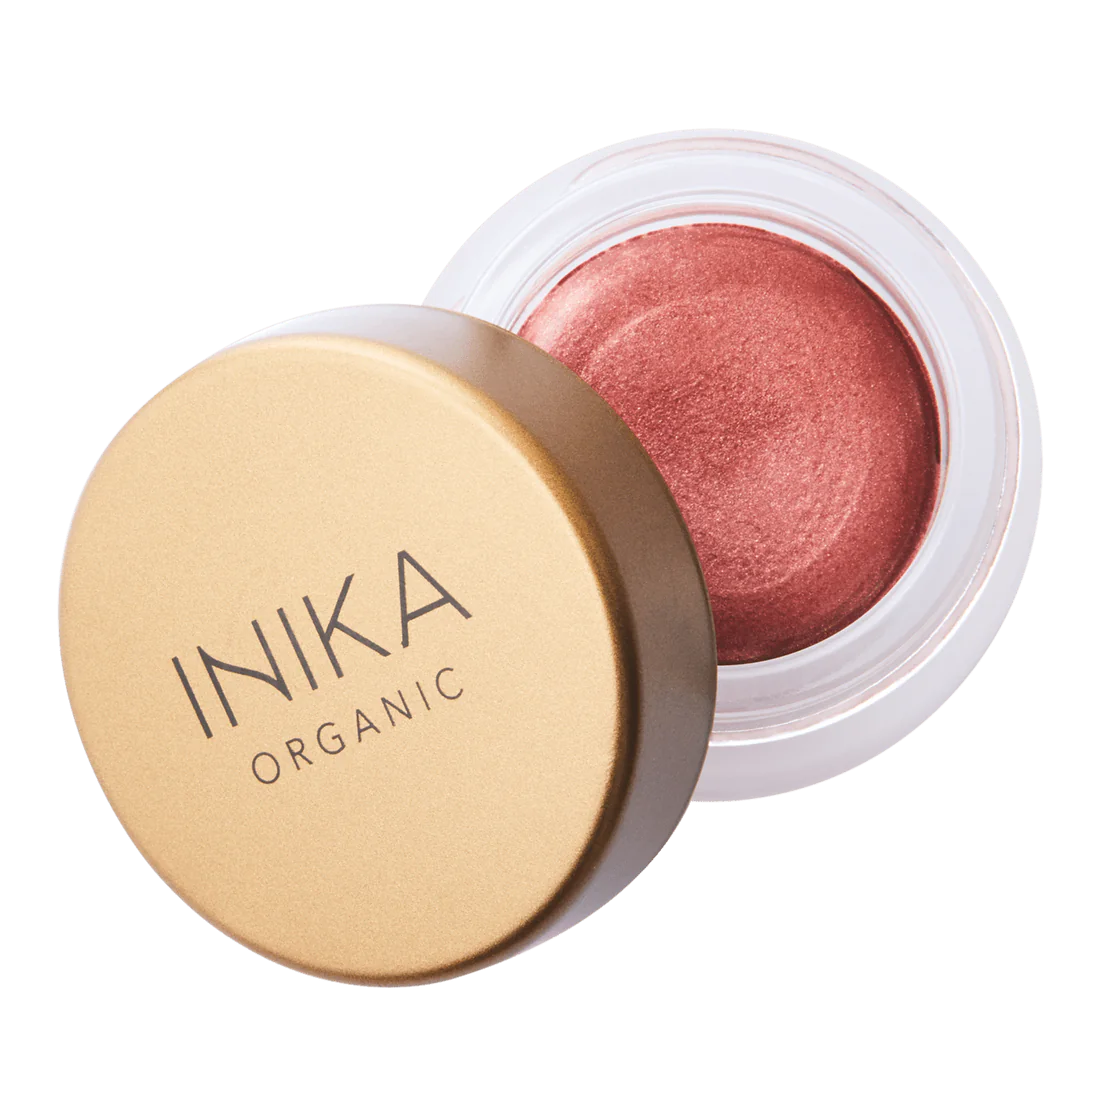 INIKA Organic Lip & Cheek Cream in Petals